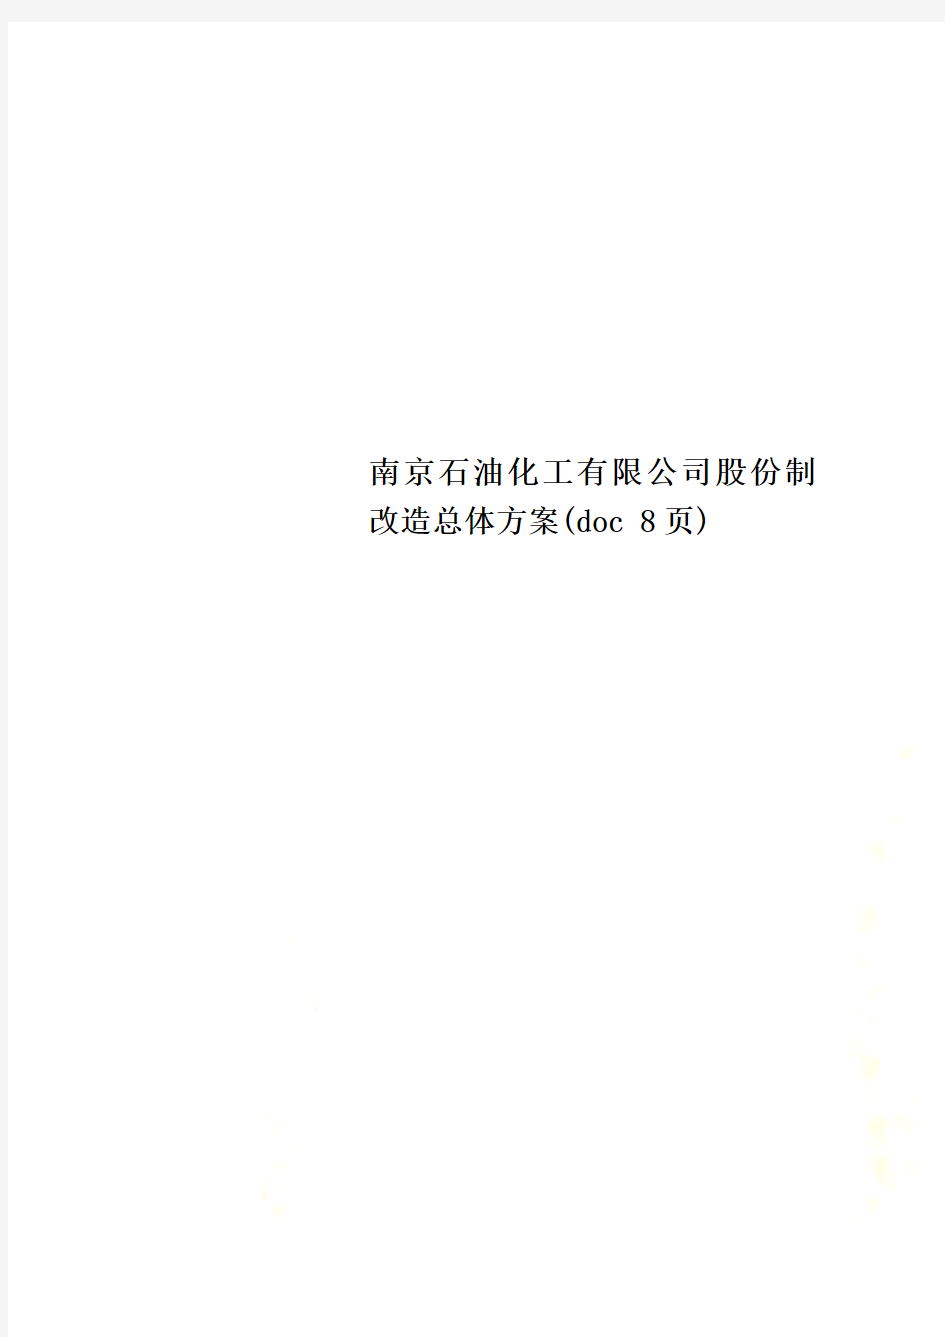 南京石油化工有限公司股份制改造总体方案(doc 8页)